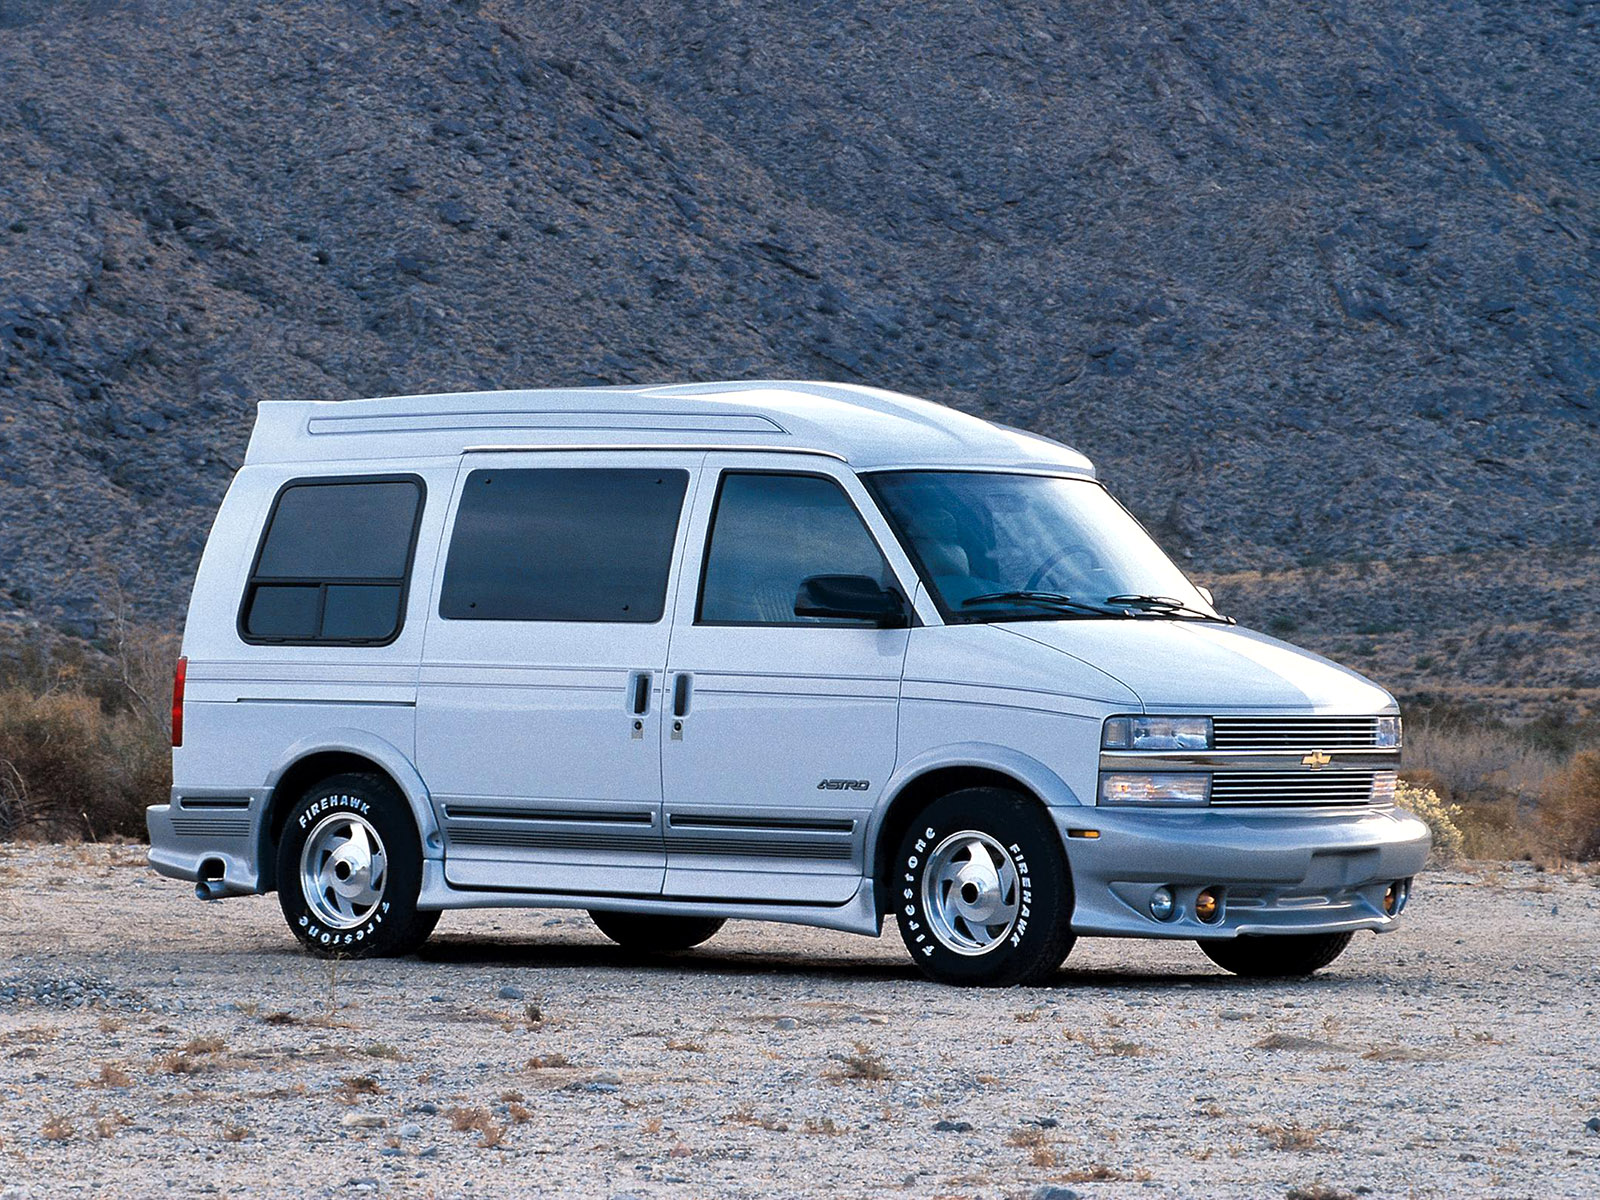 Chevrolet Astro Van фото - 11 изображений высокого качества фотогалерея Che...